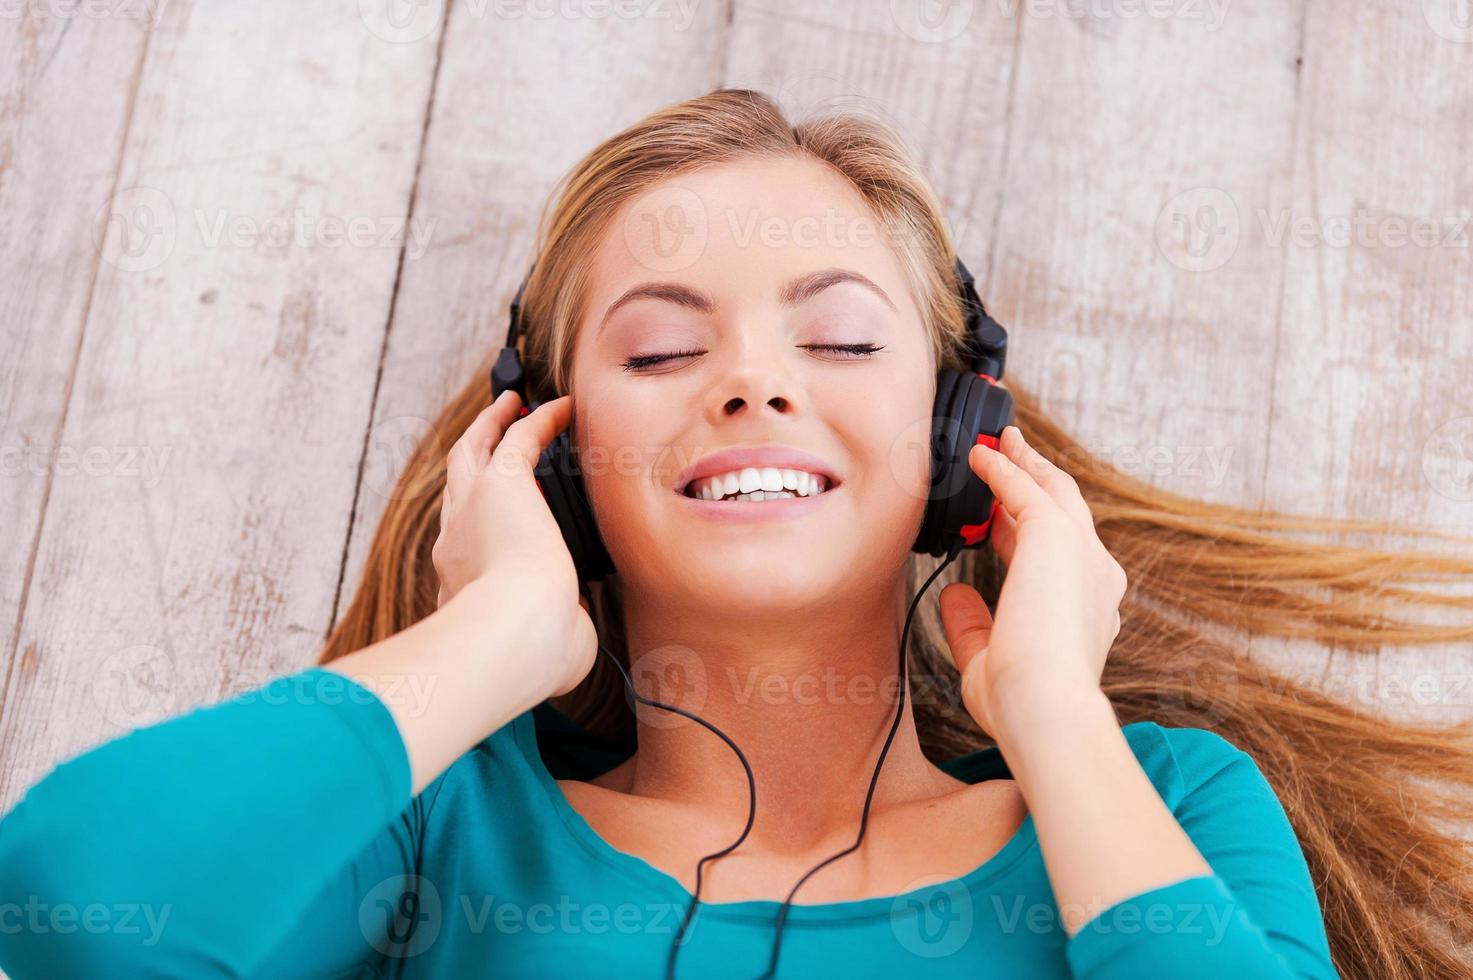 profundamente en la música. vista superior de una hermosa joven tendida en el suelo en su apartamento escuchando música a través de auriculares foto